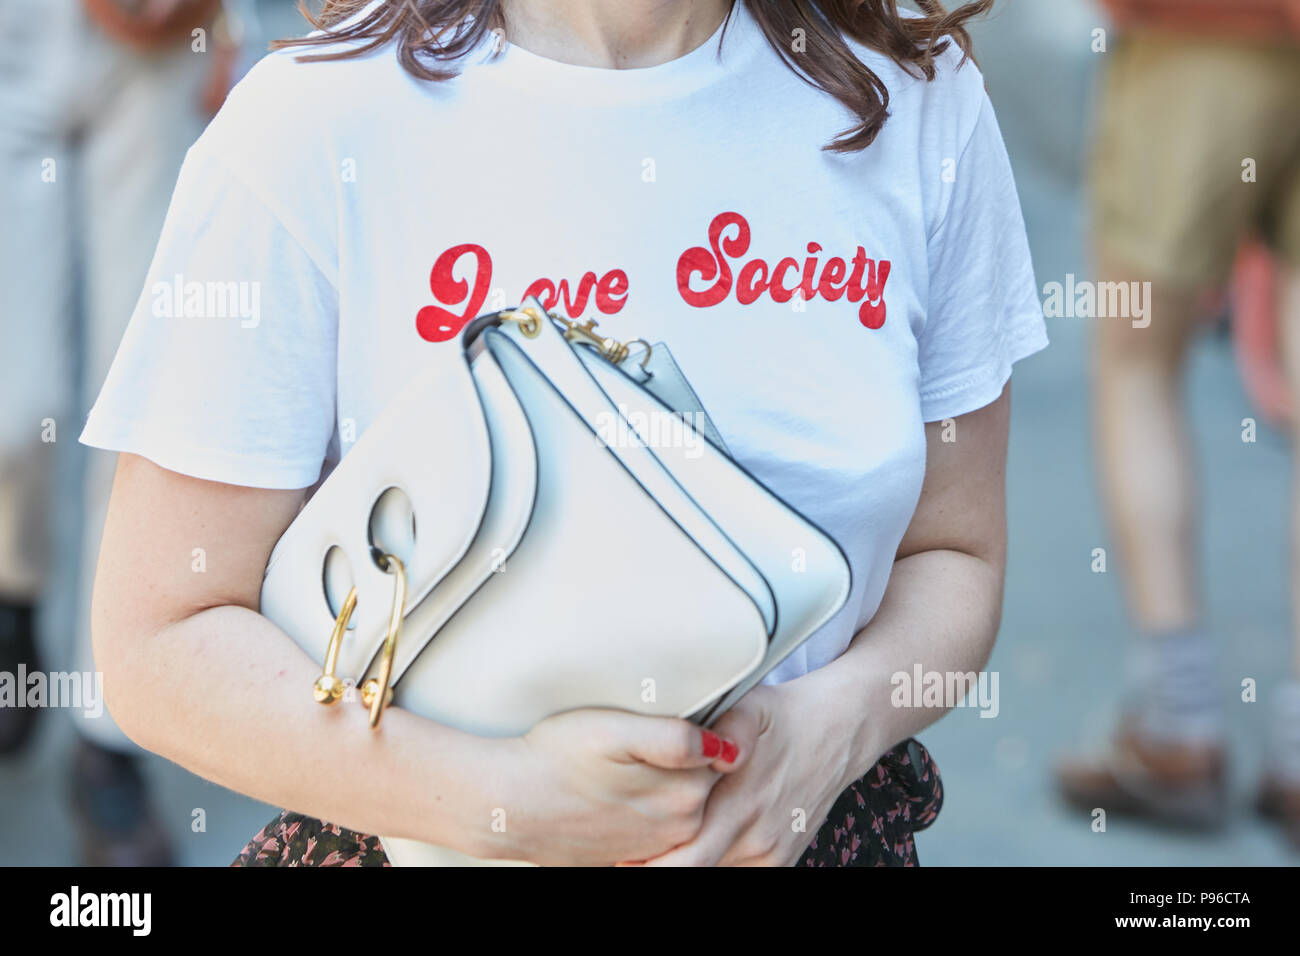 Mailand - Juni 18: Frau mit weißem Hemd mit roten Liebe Gesellschaft schreiben und JW Anderson Tasche, bevor Fendi fashion show, Mailand Fashion Week street style o Stockfoto